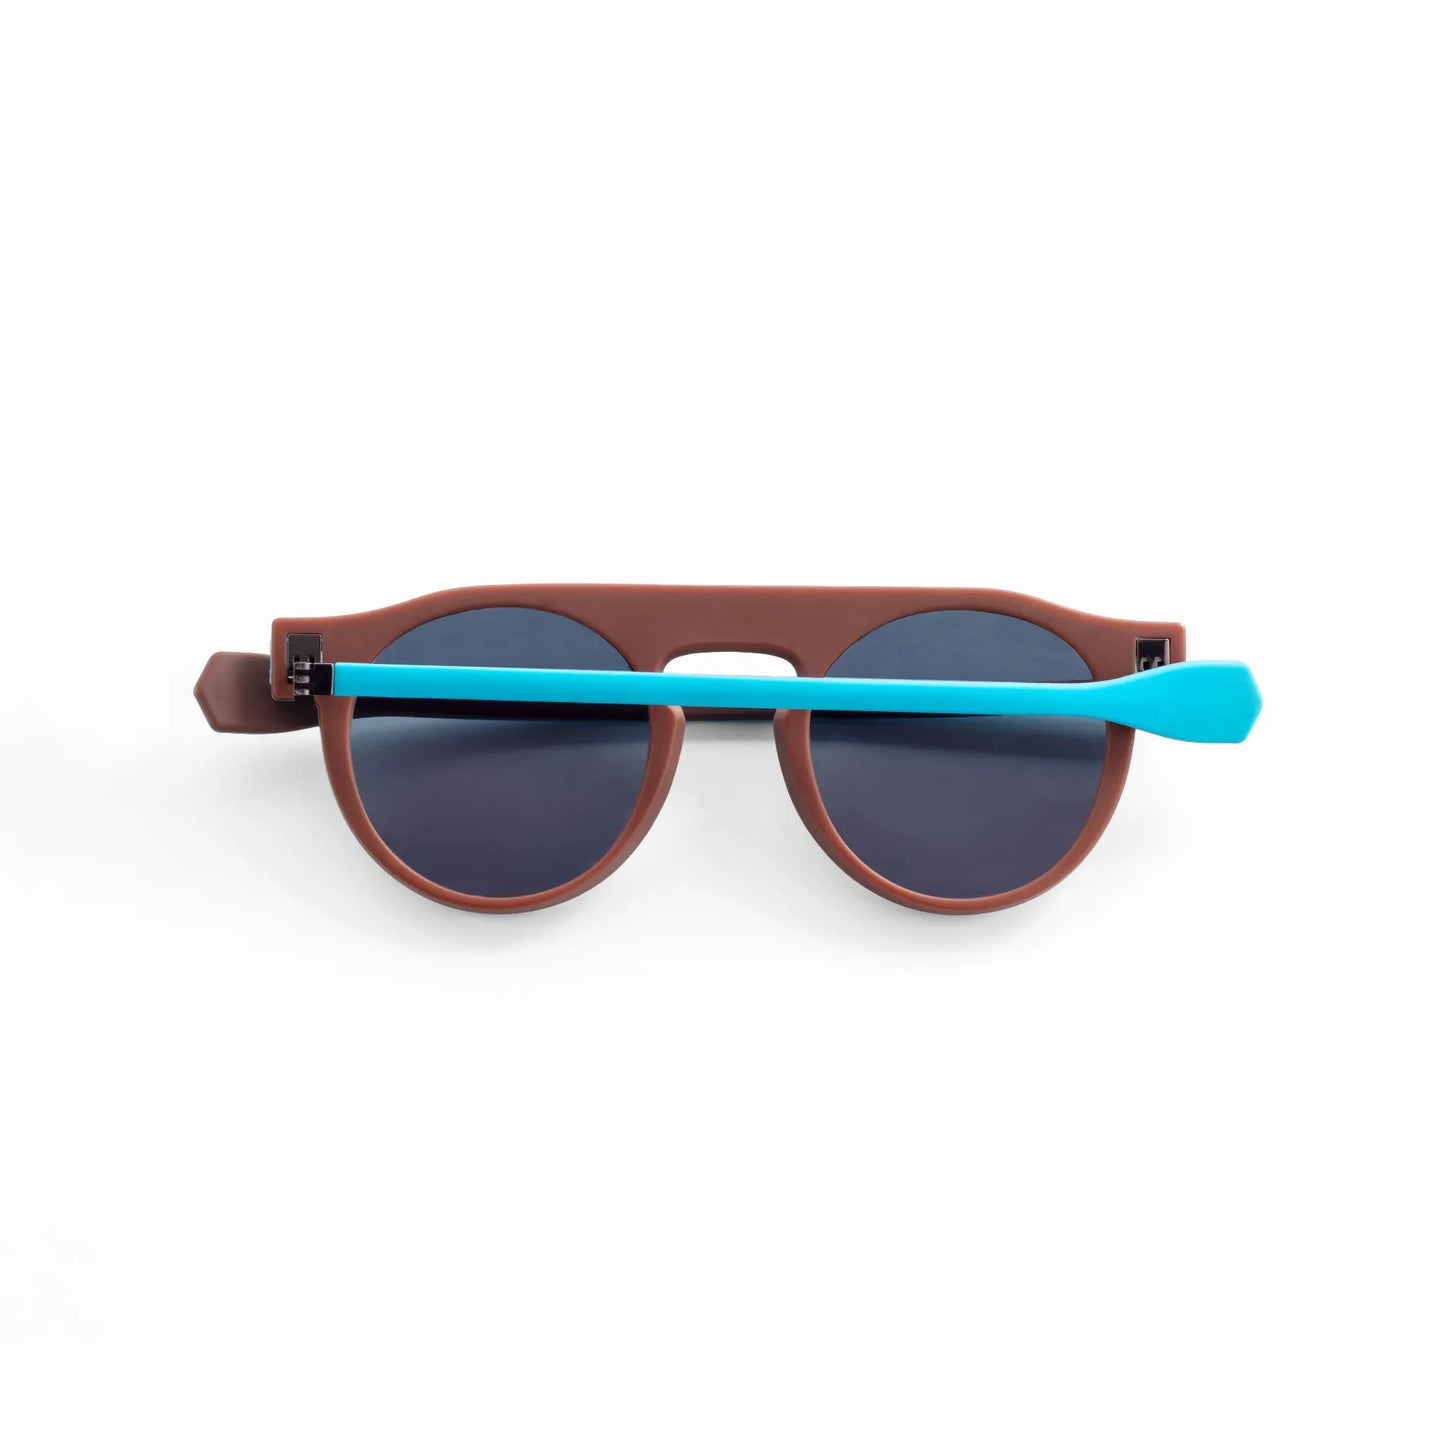 Reverso sunglasses brown & light blue reversible & ultra light back view